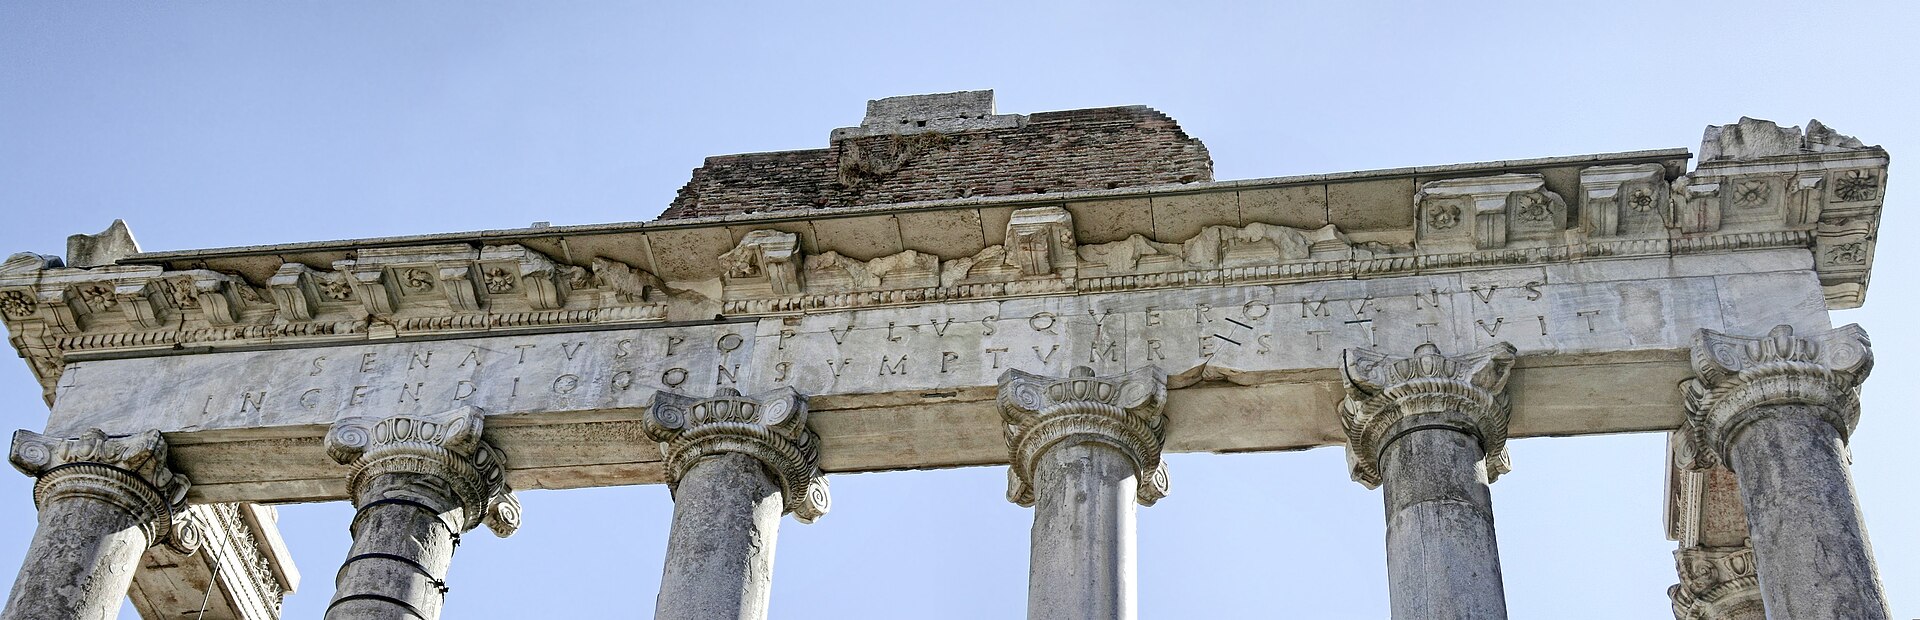 romanum - Le forum Romanum, le forum romain. 1920px-Temple-saturne-inscription